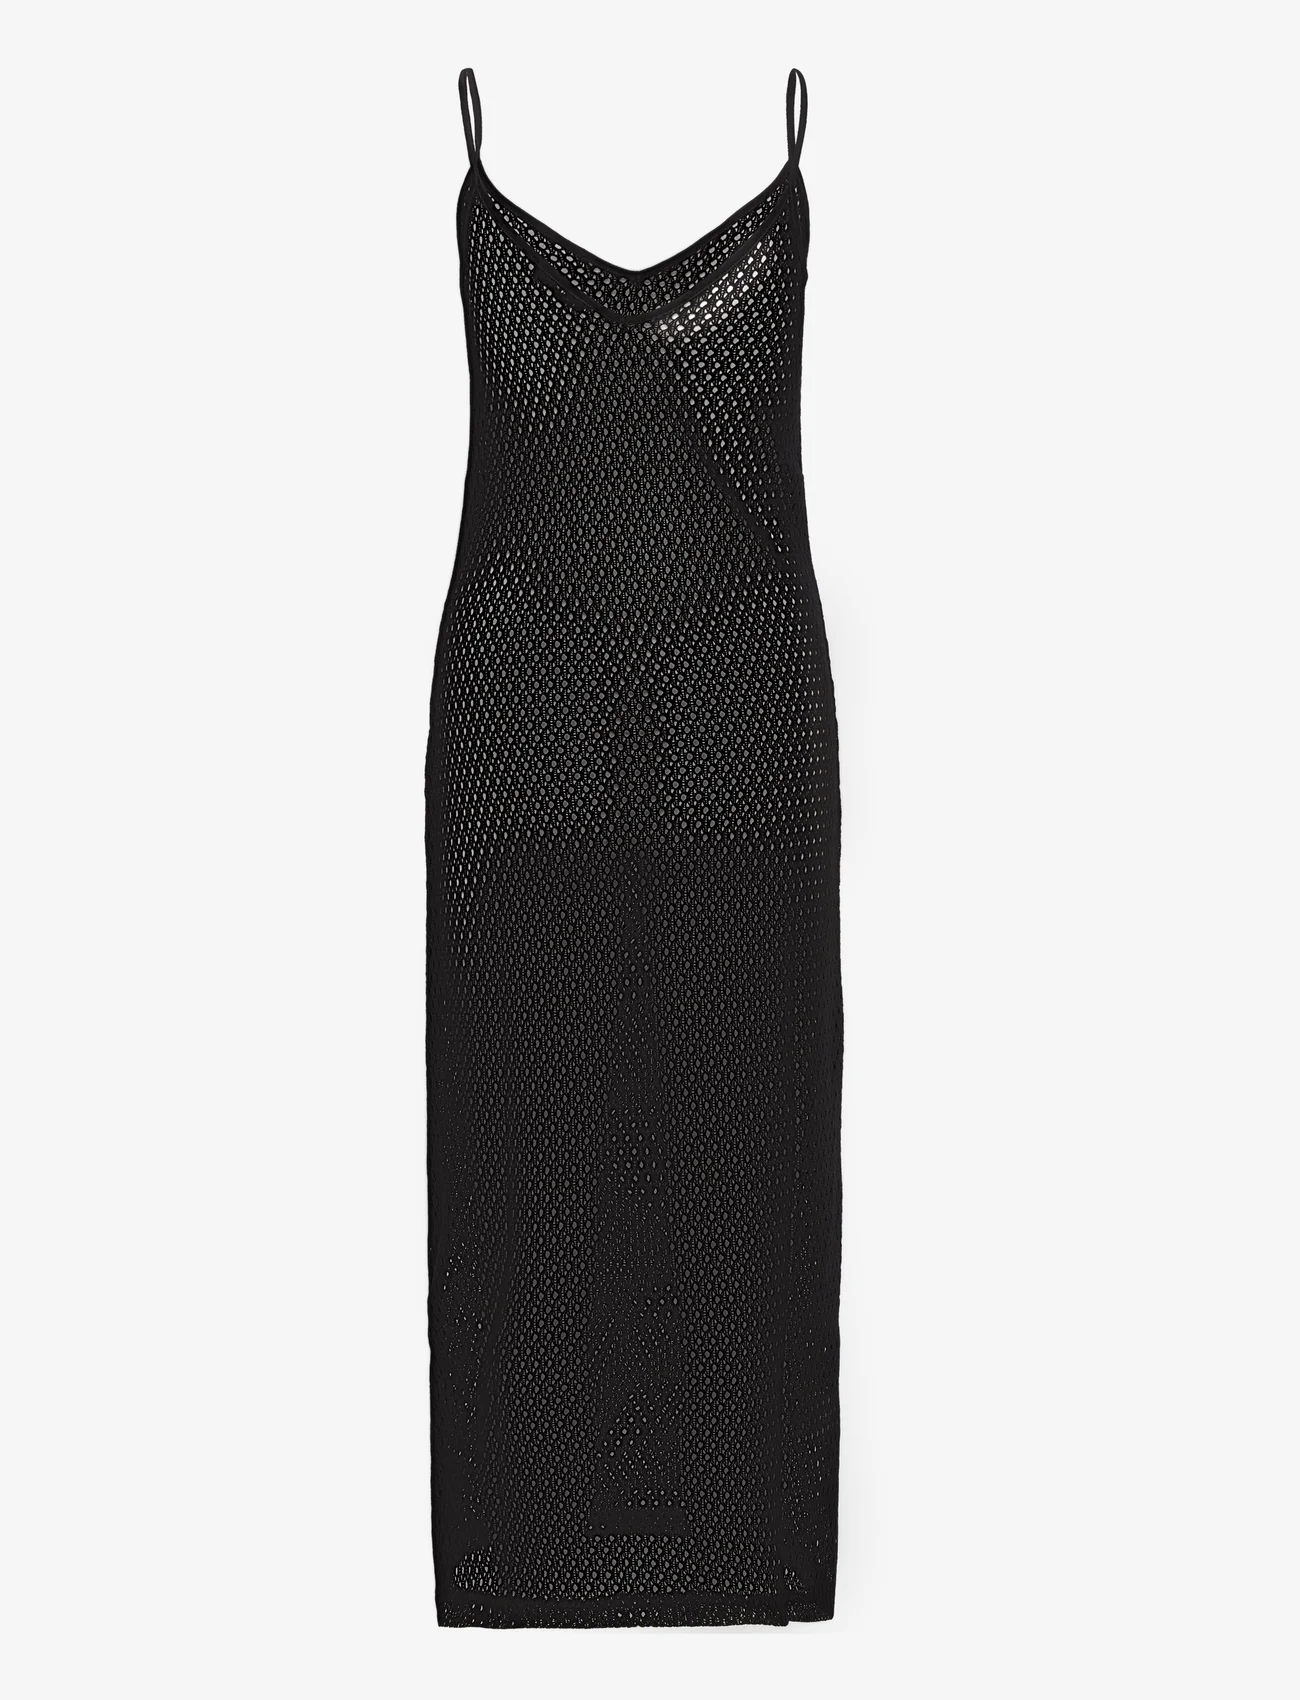 Mango - Long openwork knitted dress - stickade klänningar - black - 1